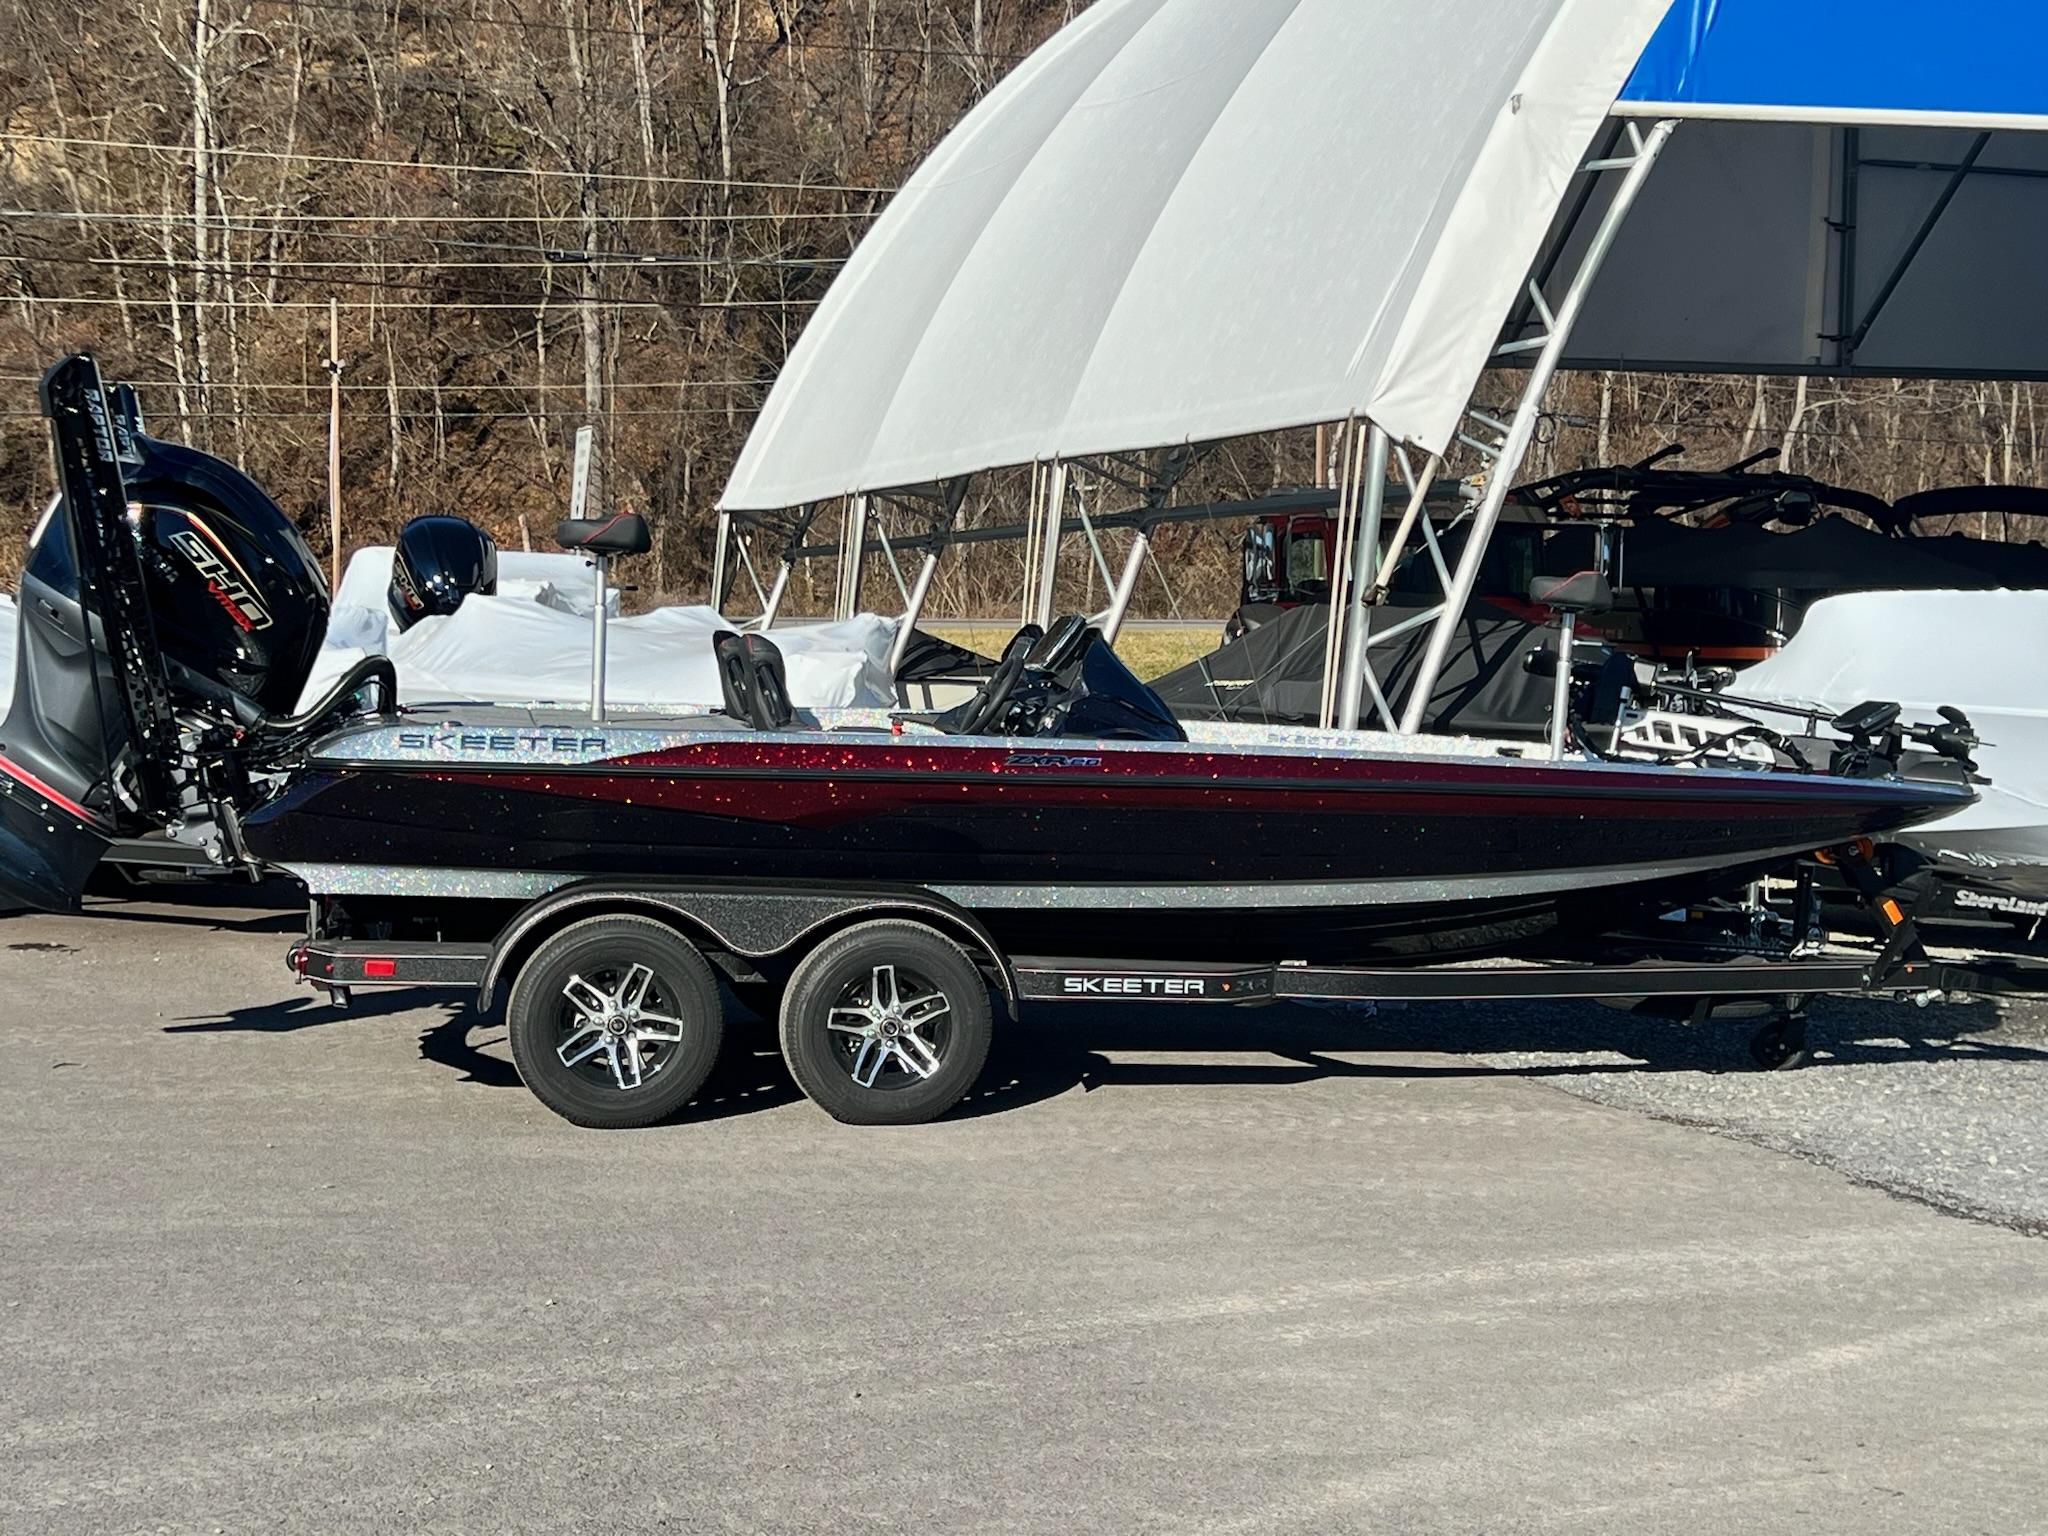 Skeeter Zxr 20 boats for sale - Boat Trader